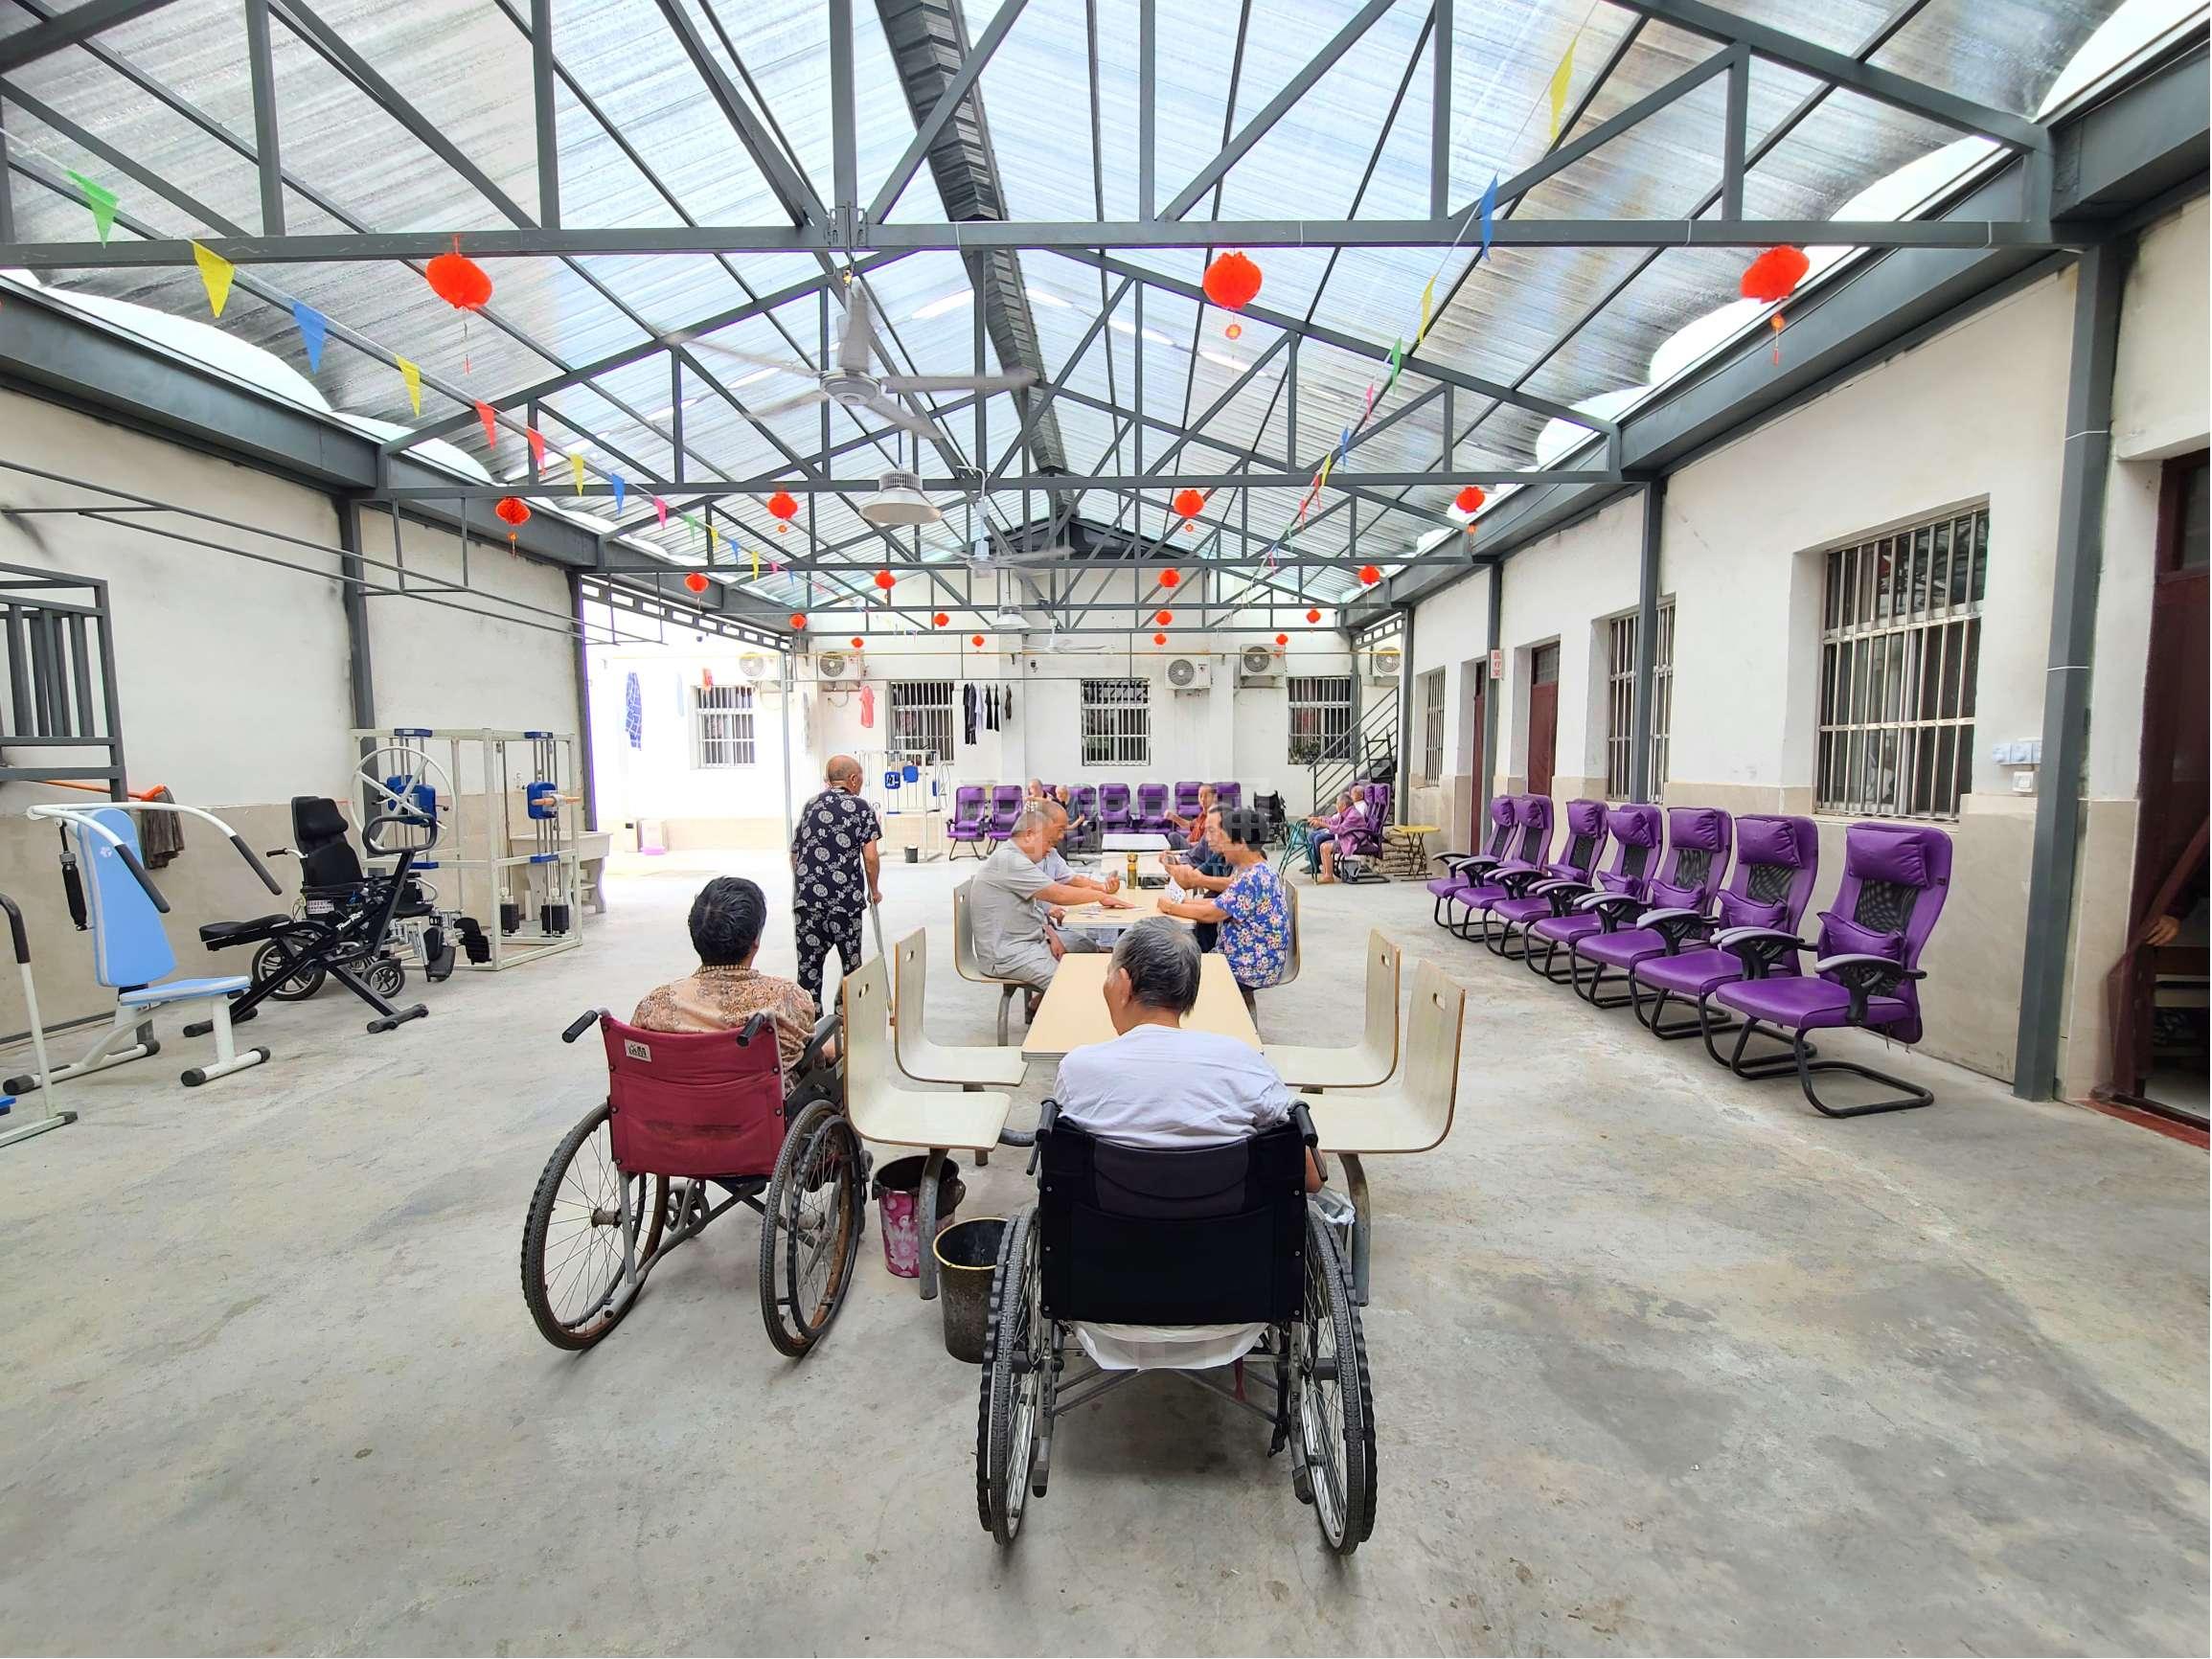 亳州利辛县温馨老年公寓服务项目图3惬意的环境、感受岁月静好